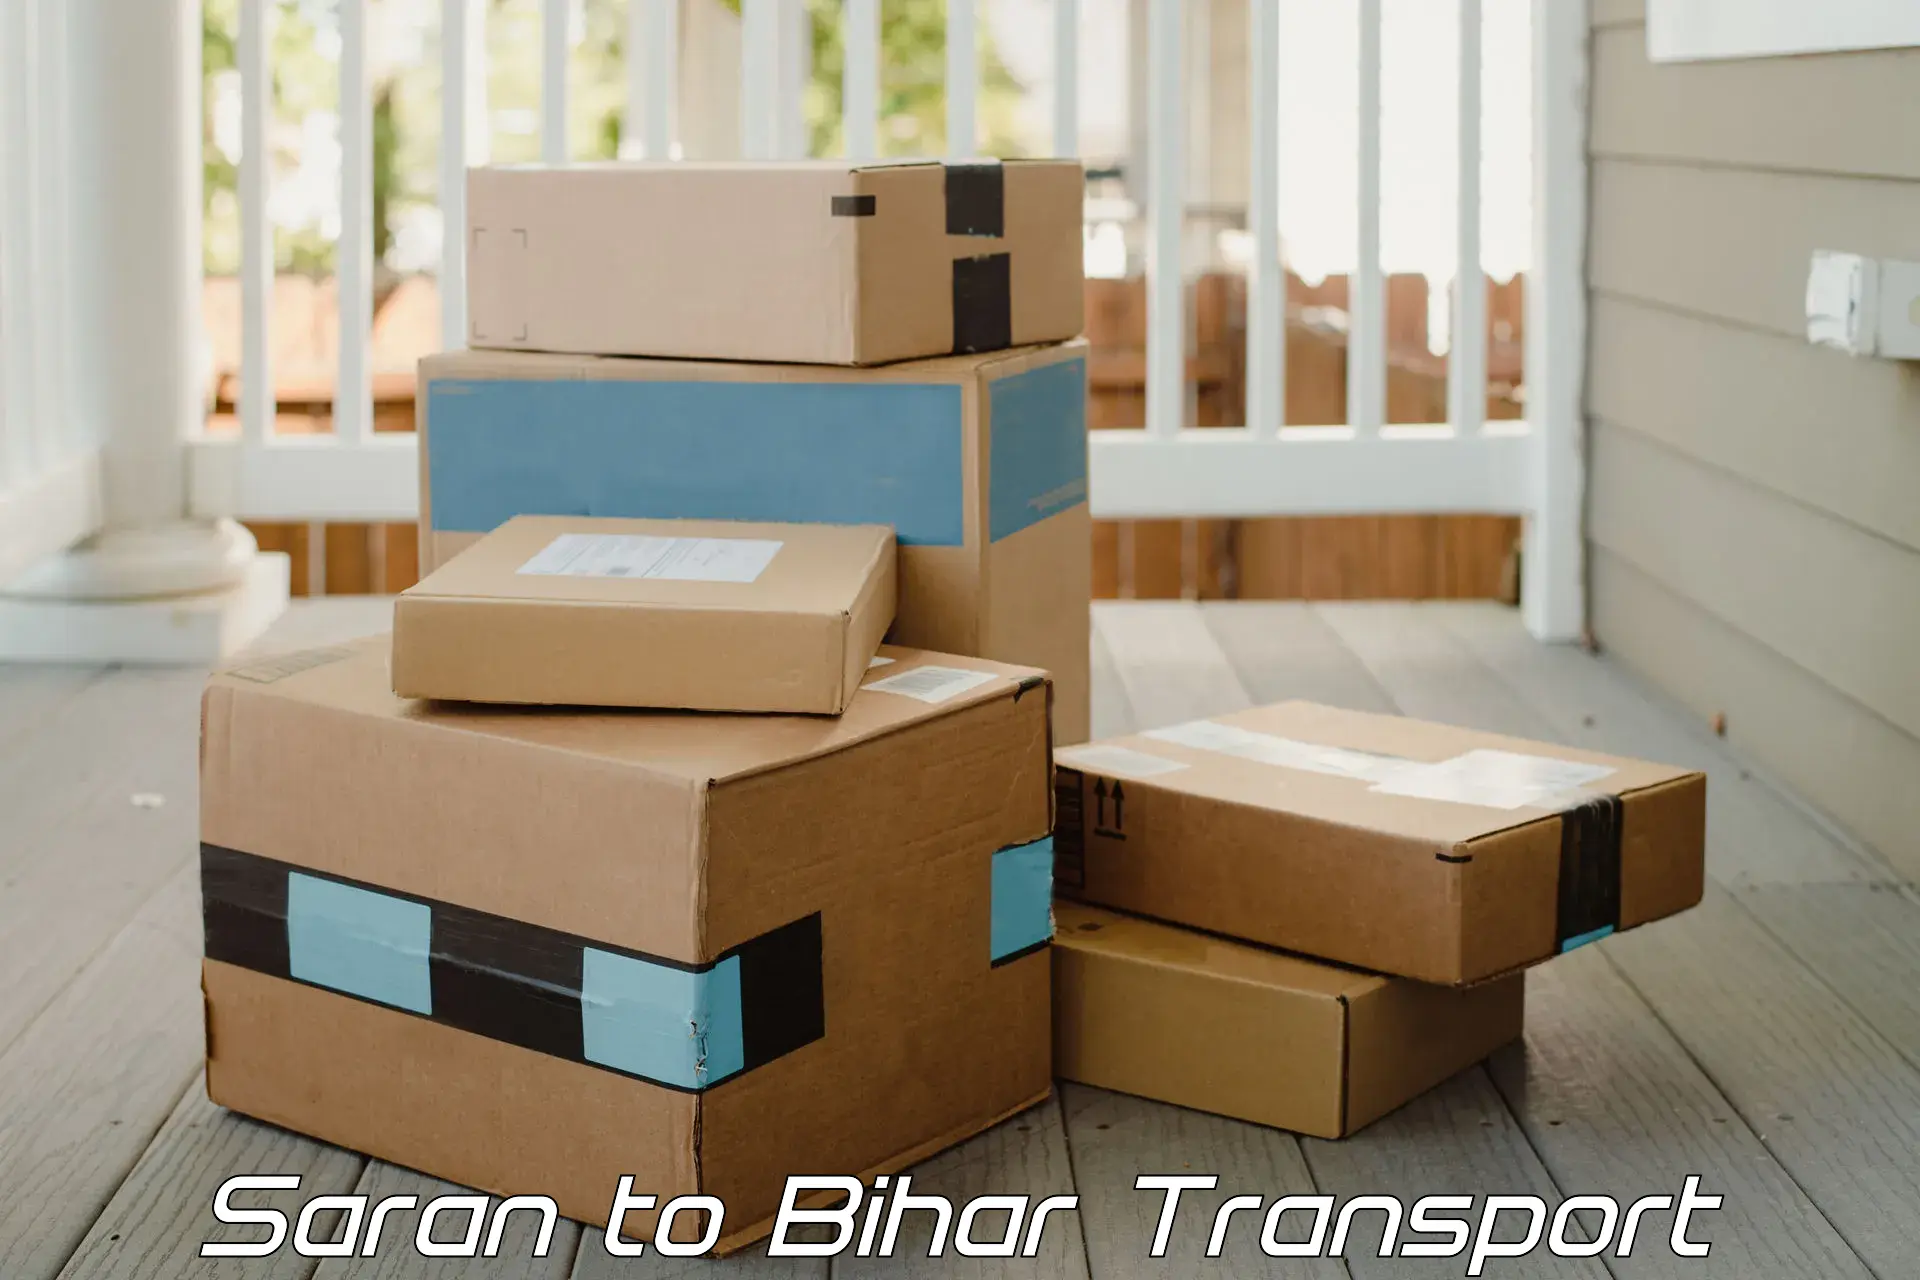 Bike shipping service Saran to Bihar